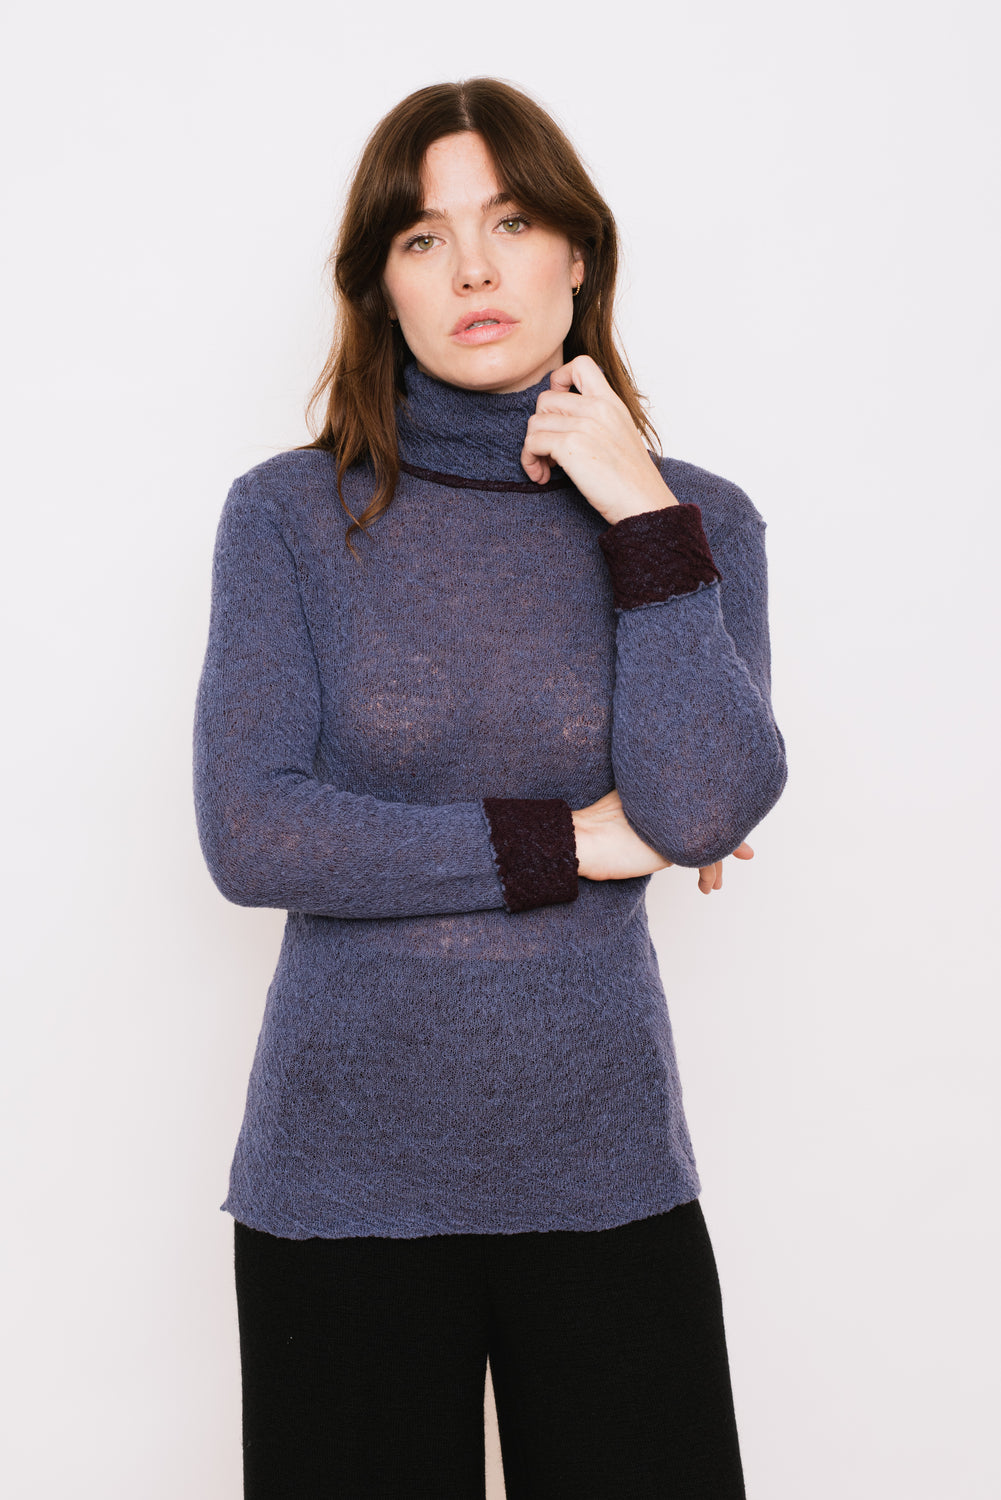 Knit Wool Turtleneck Sweater, Periwinkle